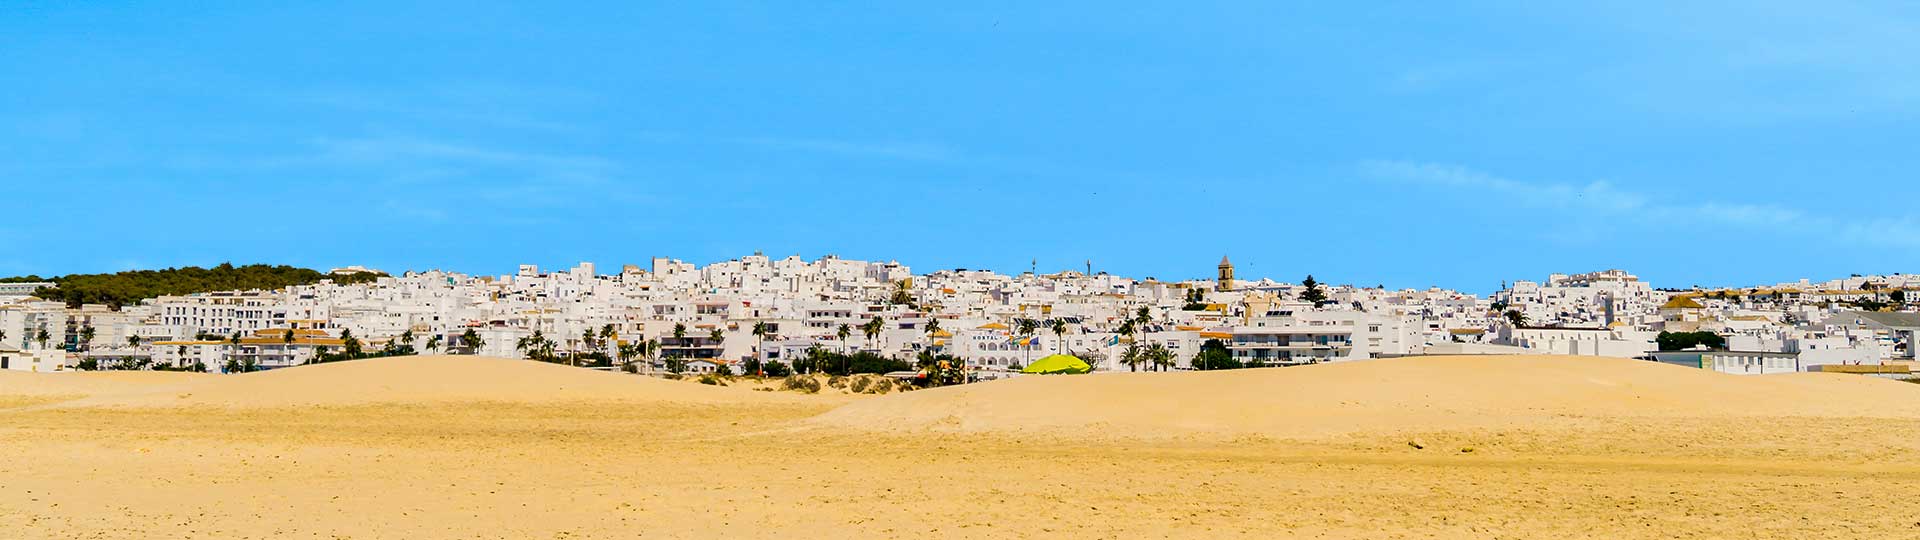 Hikes Conil de la Frontera and Roche, Cadiz province